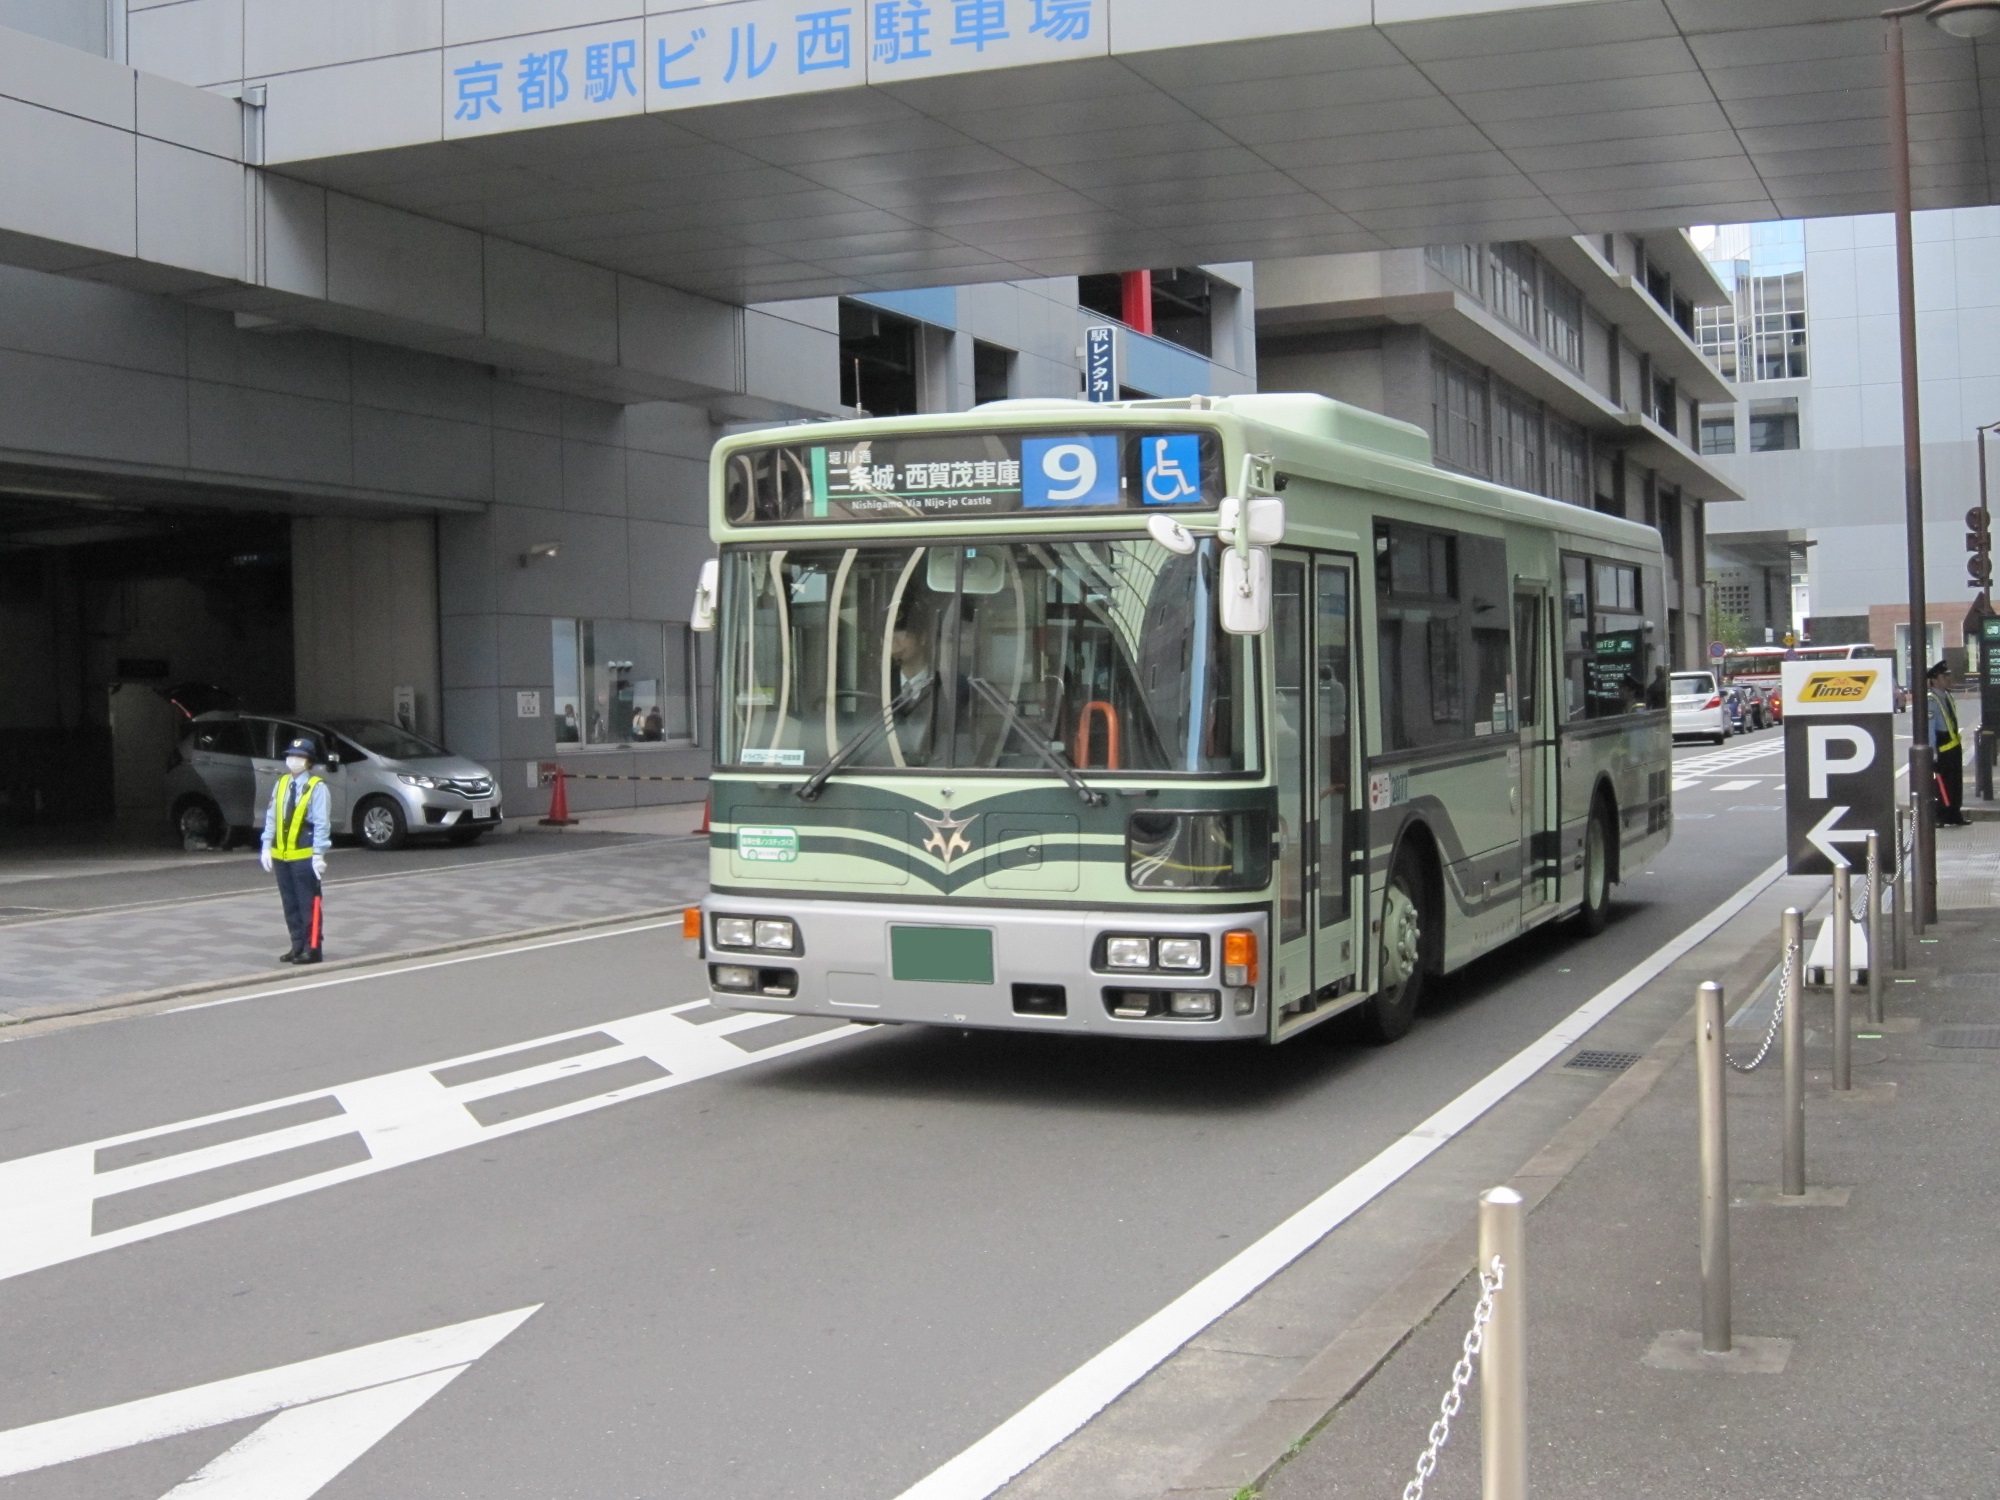 京都市バス 青地に白文字の系統番号だと市内均一料金です 京都駅前バスターミナルにて